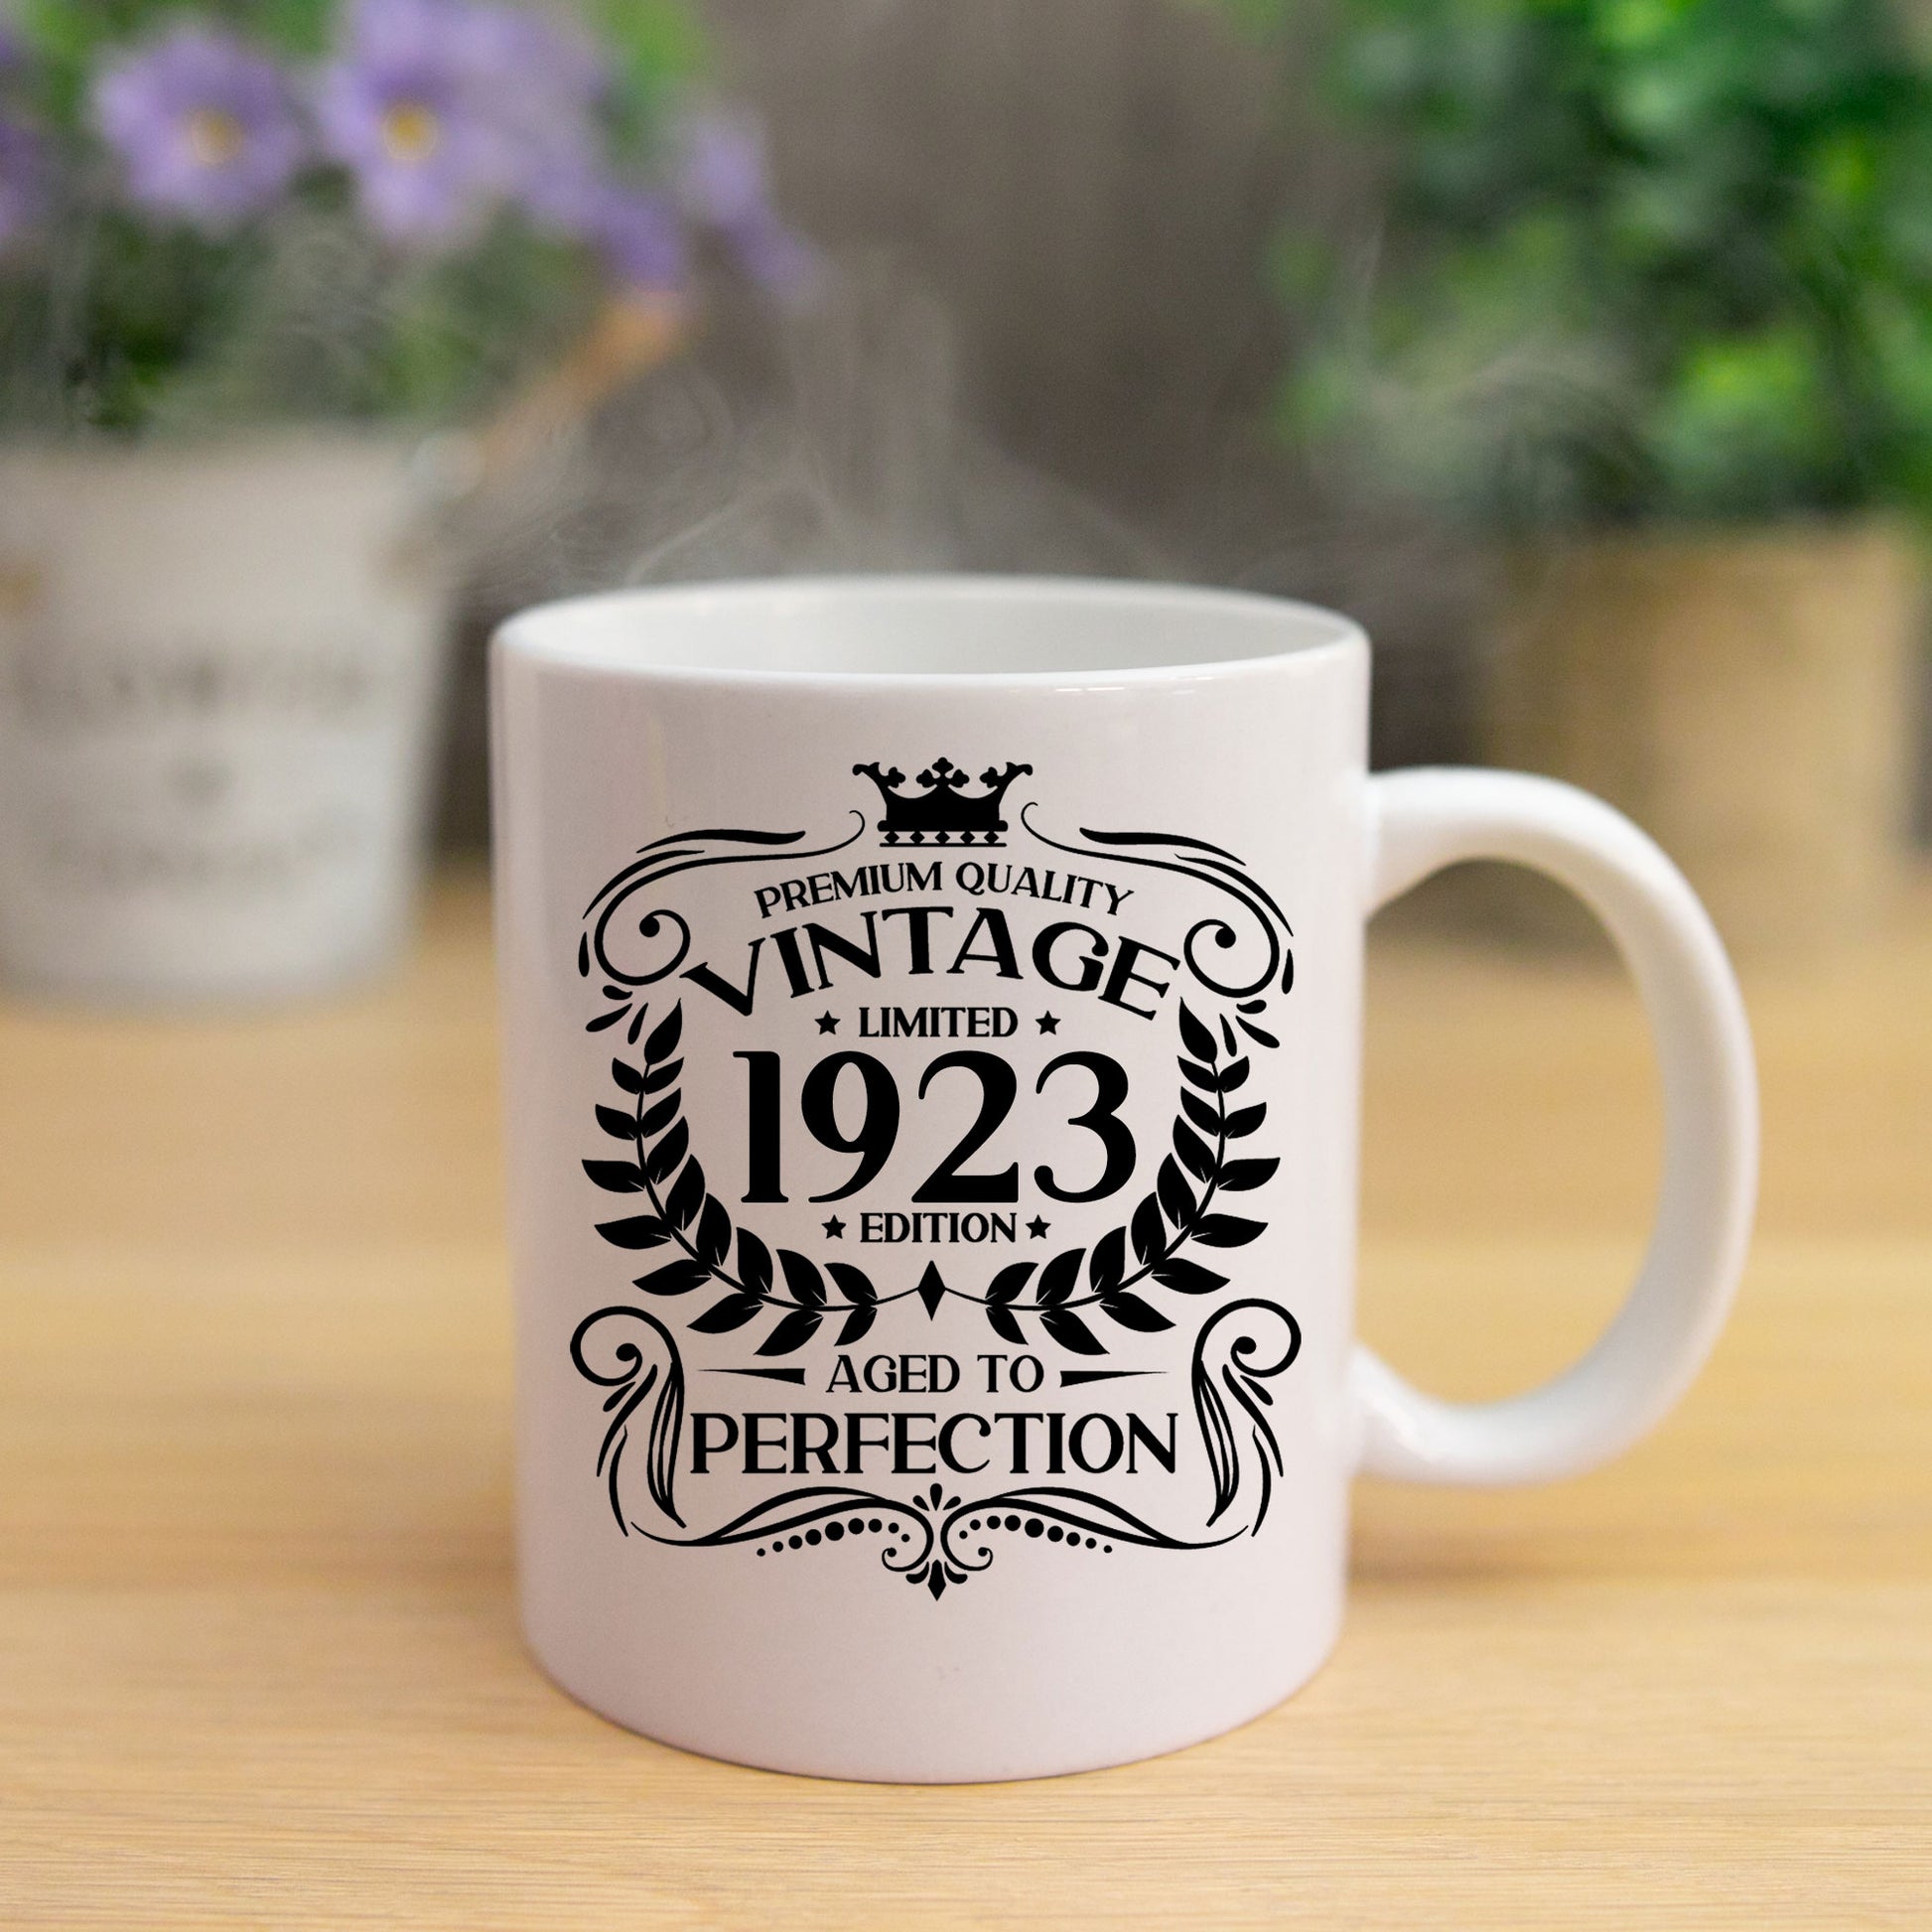 Personalised Vintage 1923 Mug and/or Coaster  - Always Looking Good -   